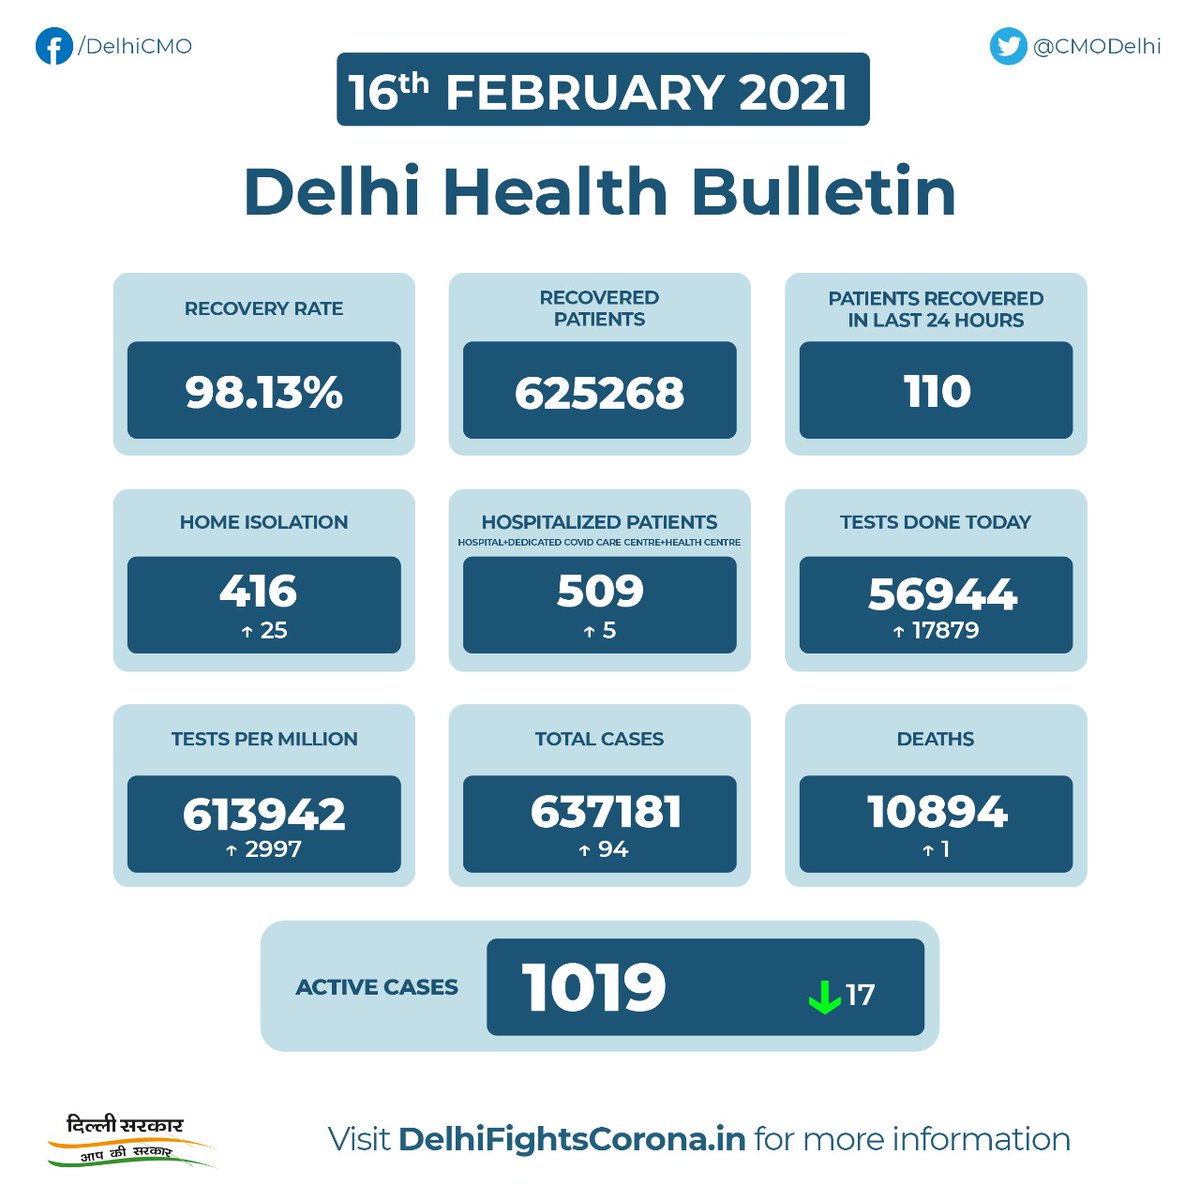 Cmo Delhi Delhi Health Bulletin 16th February 21 Delhifightscorona